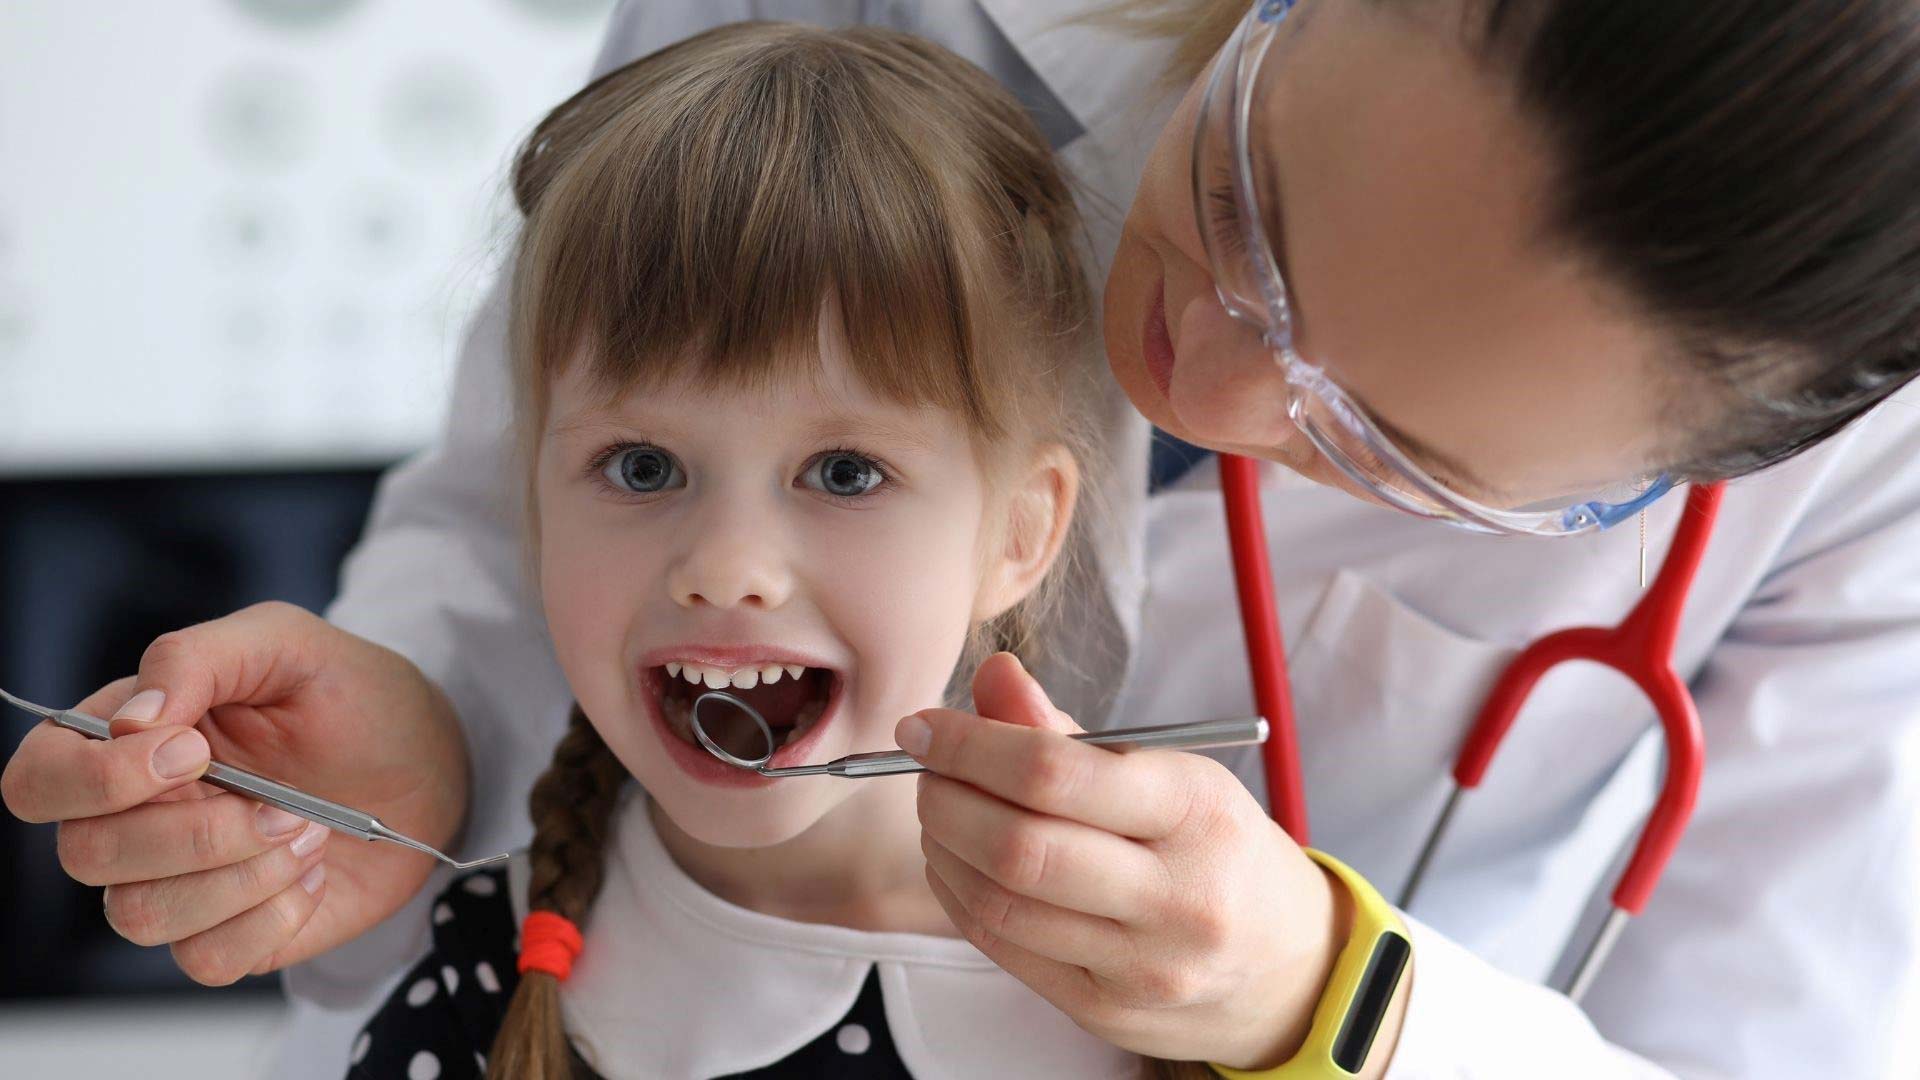 A gyerekek es a fogorvos – hogyan kezdjuk el a fogaszati latogatasokat